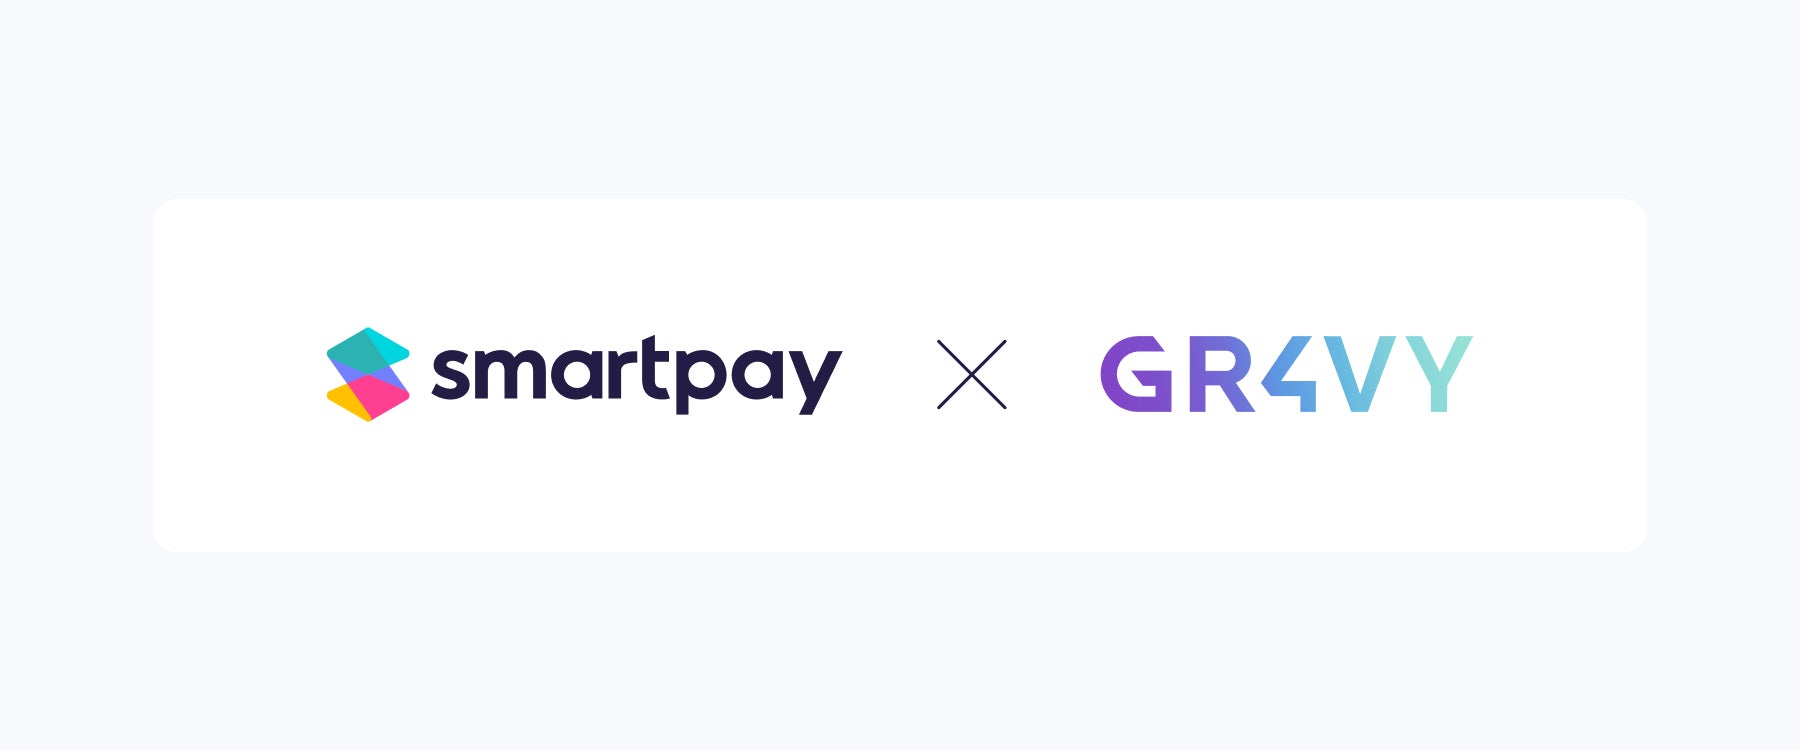 Smartpay、クラウド決済統合のGr4vyと連携し分割払いの導入をさらに身近に